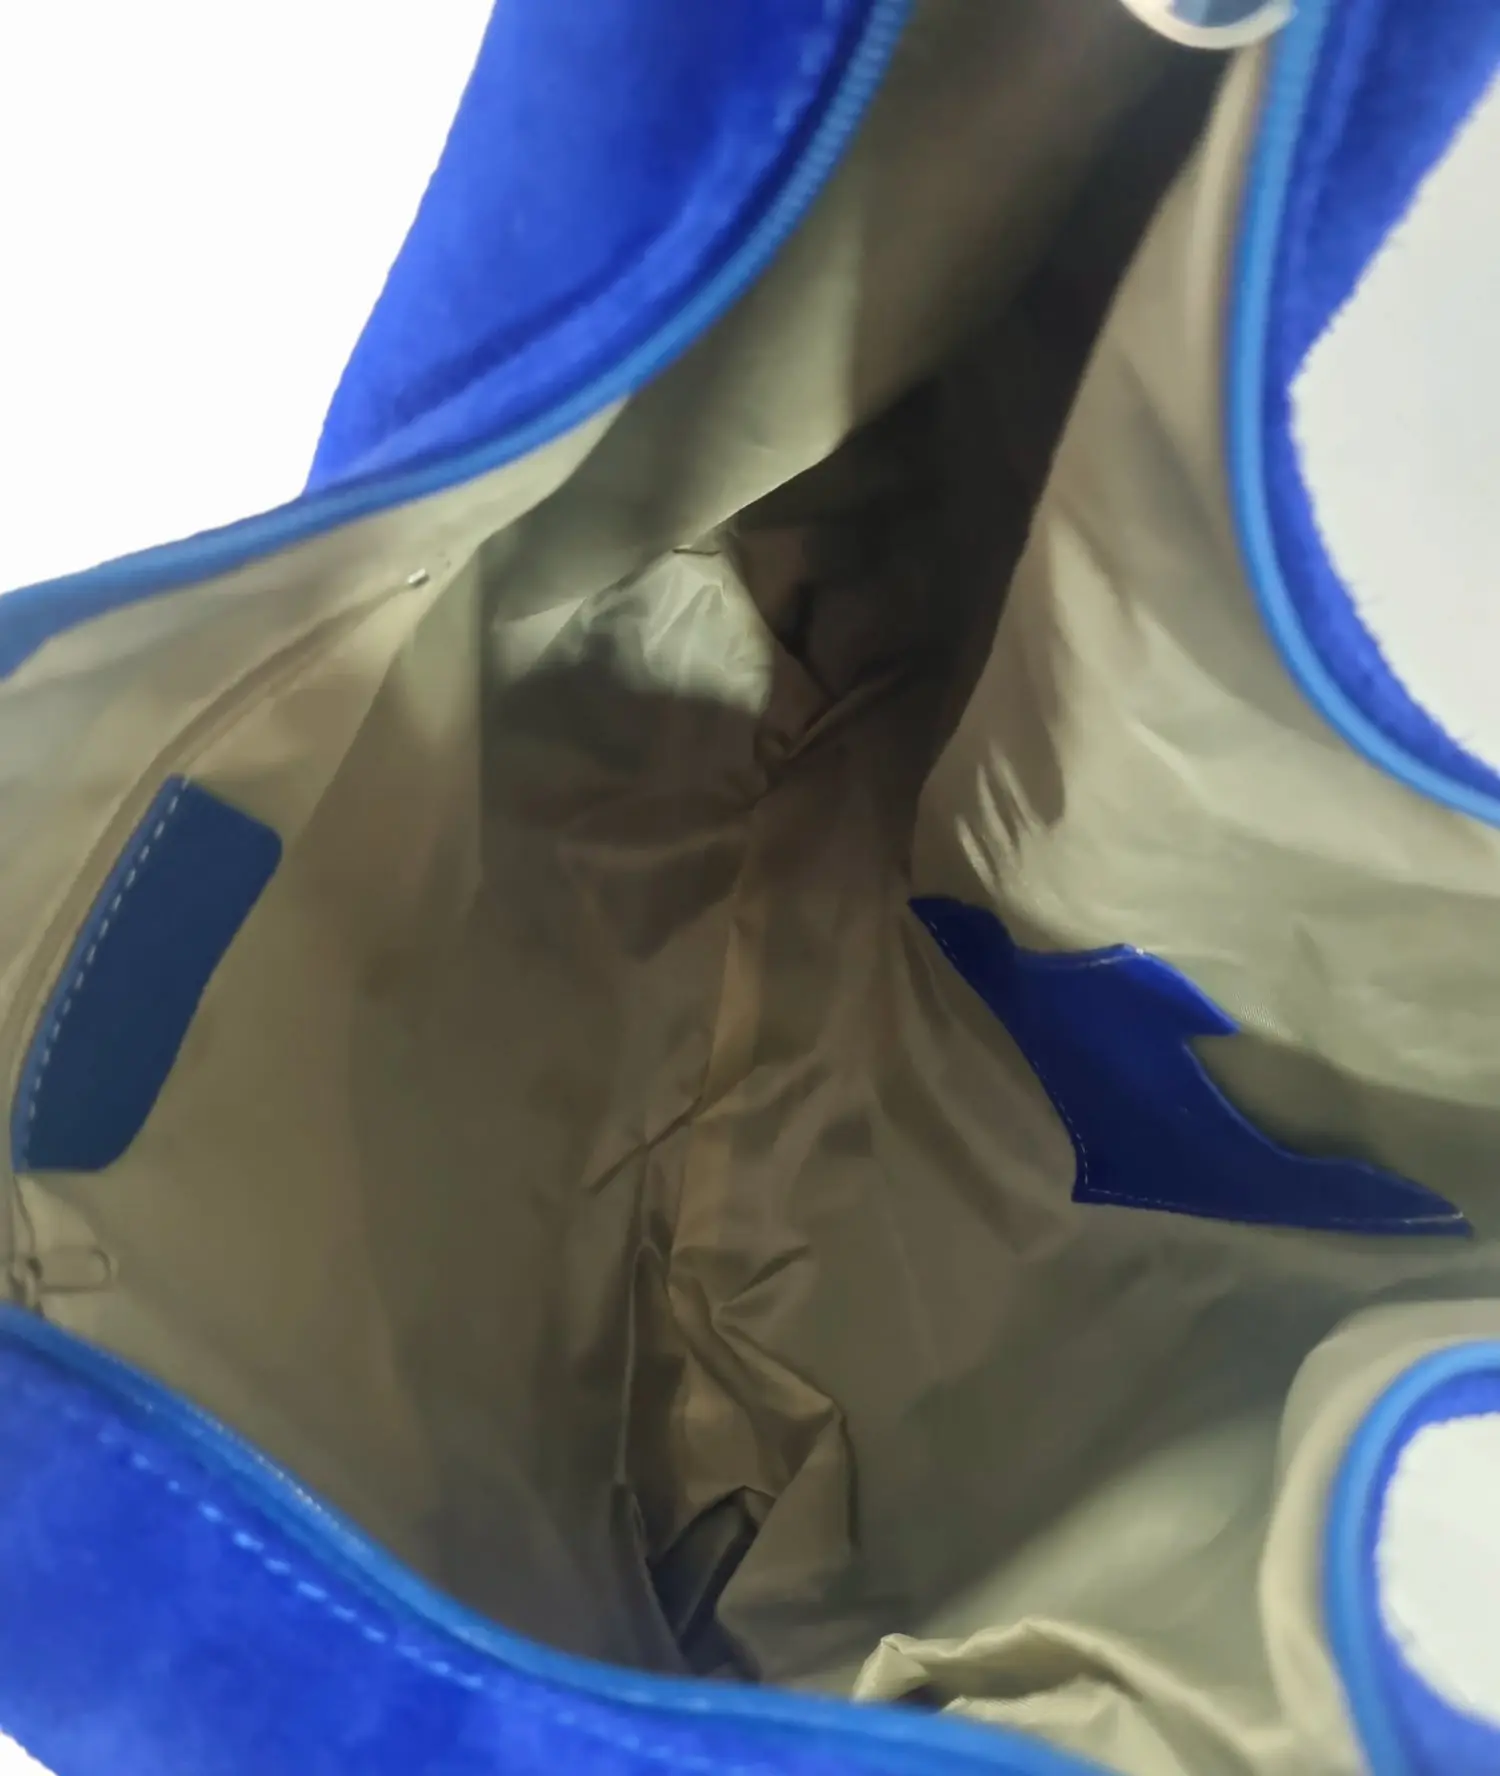 Elektrisch blaue Wildledertasche mit silbernem Besatz, Reißverschluss, gefüttertem Innenraum mit seitlicher Wildledertasche für Mobiltelefon und Reißverschlusstasche. Zertifiziertes Echtleder, hergestellt in Italien. Maße L 43 H 34, Griffbreite 29 cm